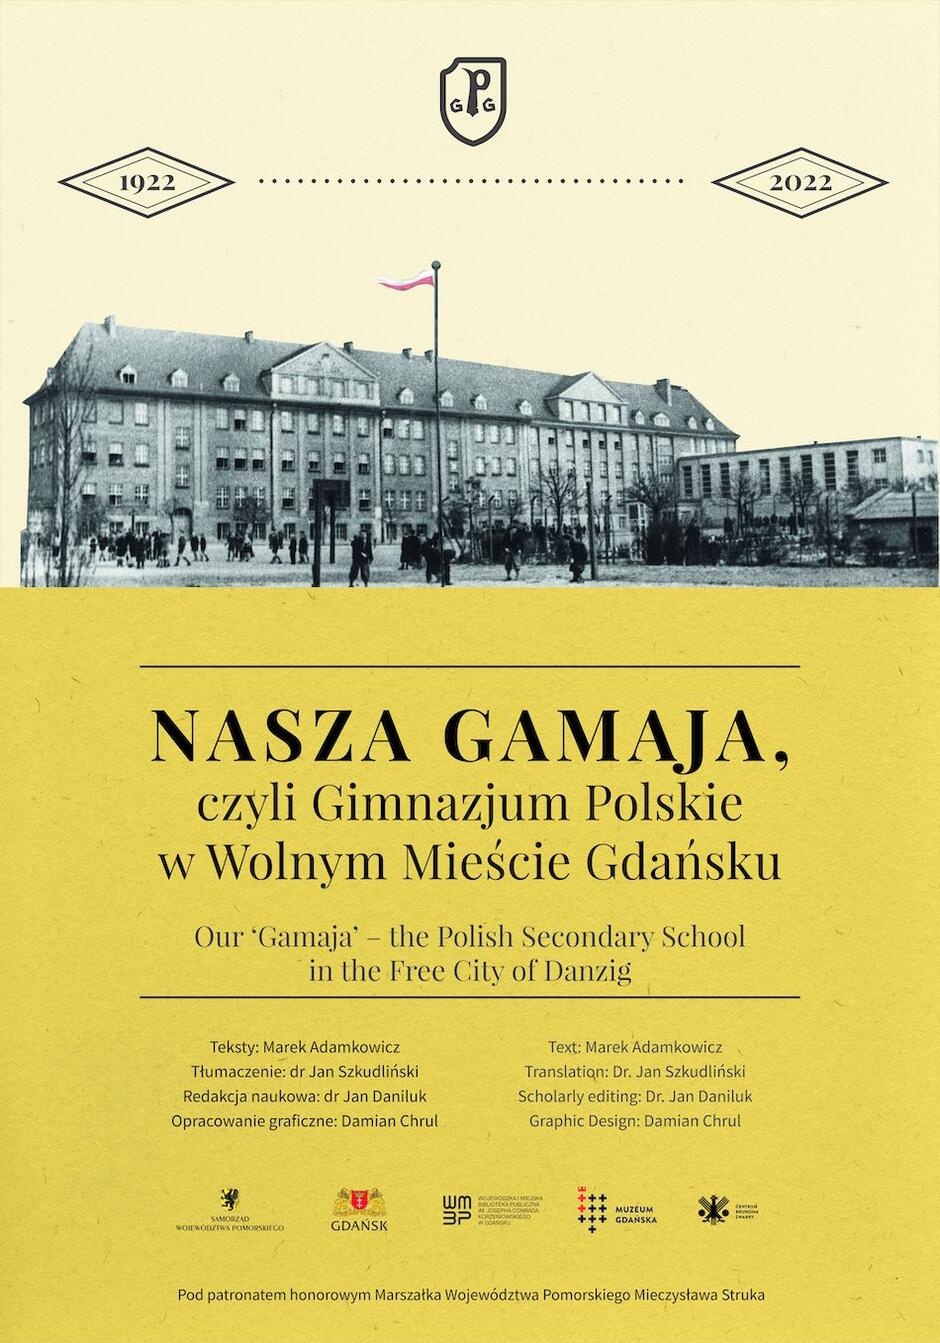 Plansza tytułowa nowej wystawy czasowej przygotowanej przez WiMBP w Gdańsku oraz Muzeum Gdańska. Ekspozycja będzie prezentowana na placu Obrońców Poczty Polskiej od 13 do 27 maja